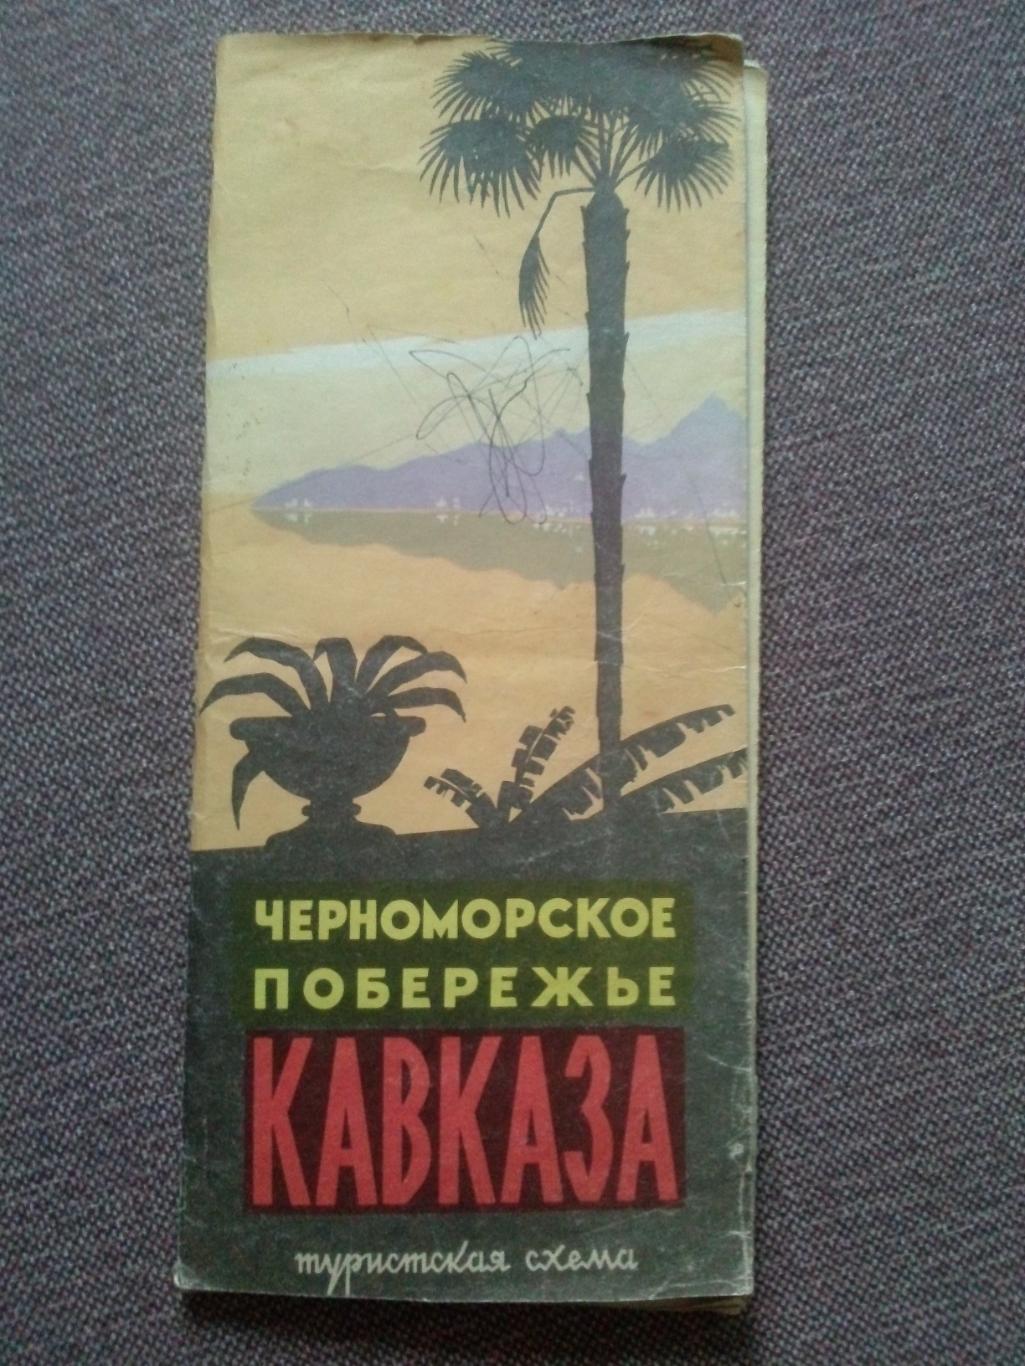 Карта (туристская схема) : Черноморское побережье Кавказа 1967 г. (Туризм СССР)